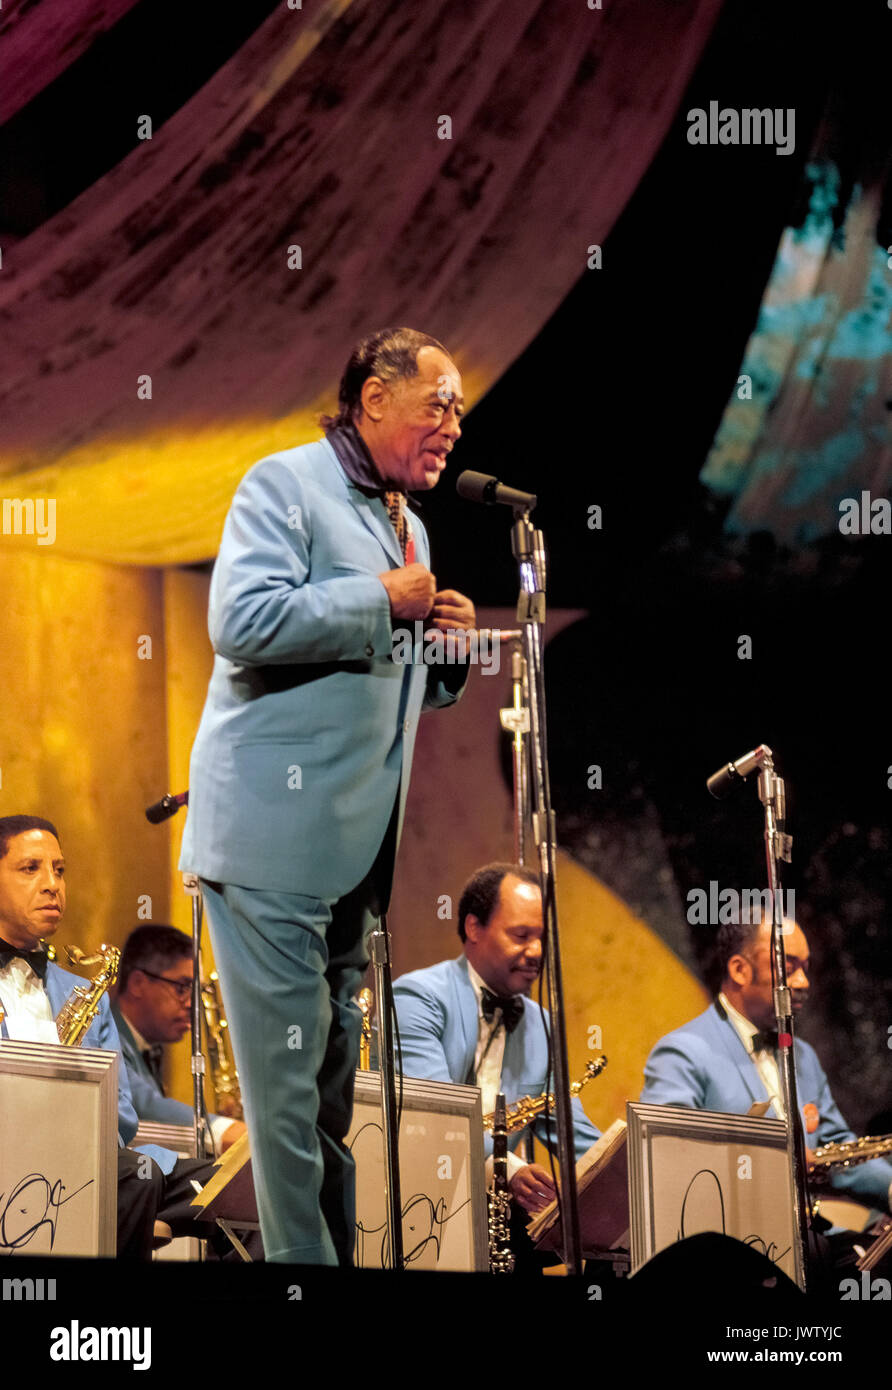 Der berühmte Bandleader Duke Ellington spricht mit dem Publikum über sein Orchester, das beim Monterey Jazz Festival 1970 auftrat, wo sie die vorgestellte Unterhaltung bei dieser jährlichen Veranstaltung in Monterey, Kalifornien, USA waren. Dies war gegen Ende von Ellingtons musikalischer Karriere, die mehr als 50 Jahre bis zu seinem Tod im Jahr 1974 im Alter von 75 Jahren dauerte. Historisches Foto. Stockfoto